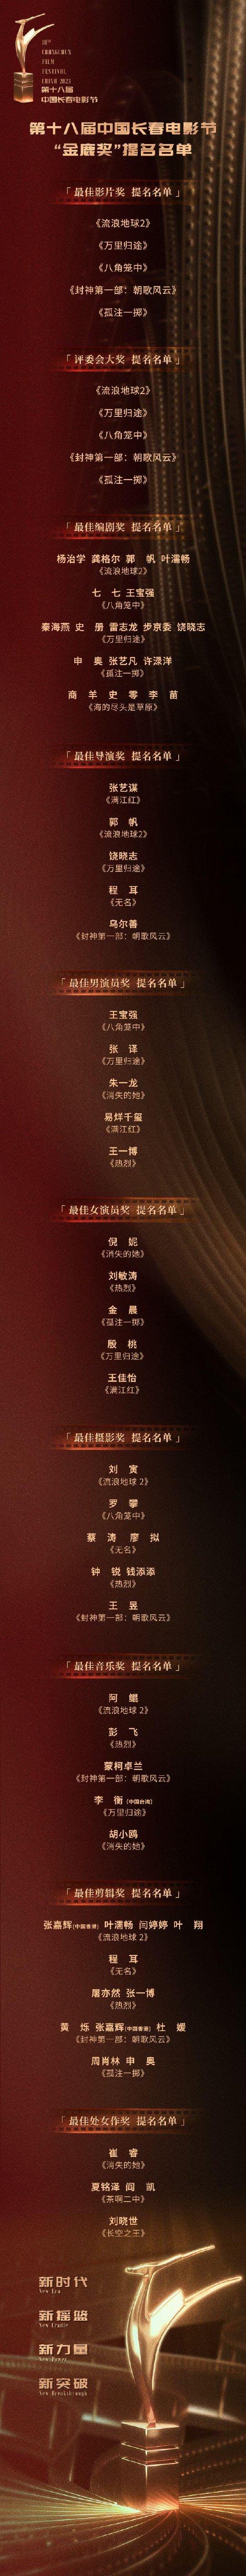 第十八届中国长春电影节“金鹿奖”提名名单公布 (http://www.atyanze.com/) dds 第1张